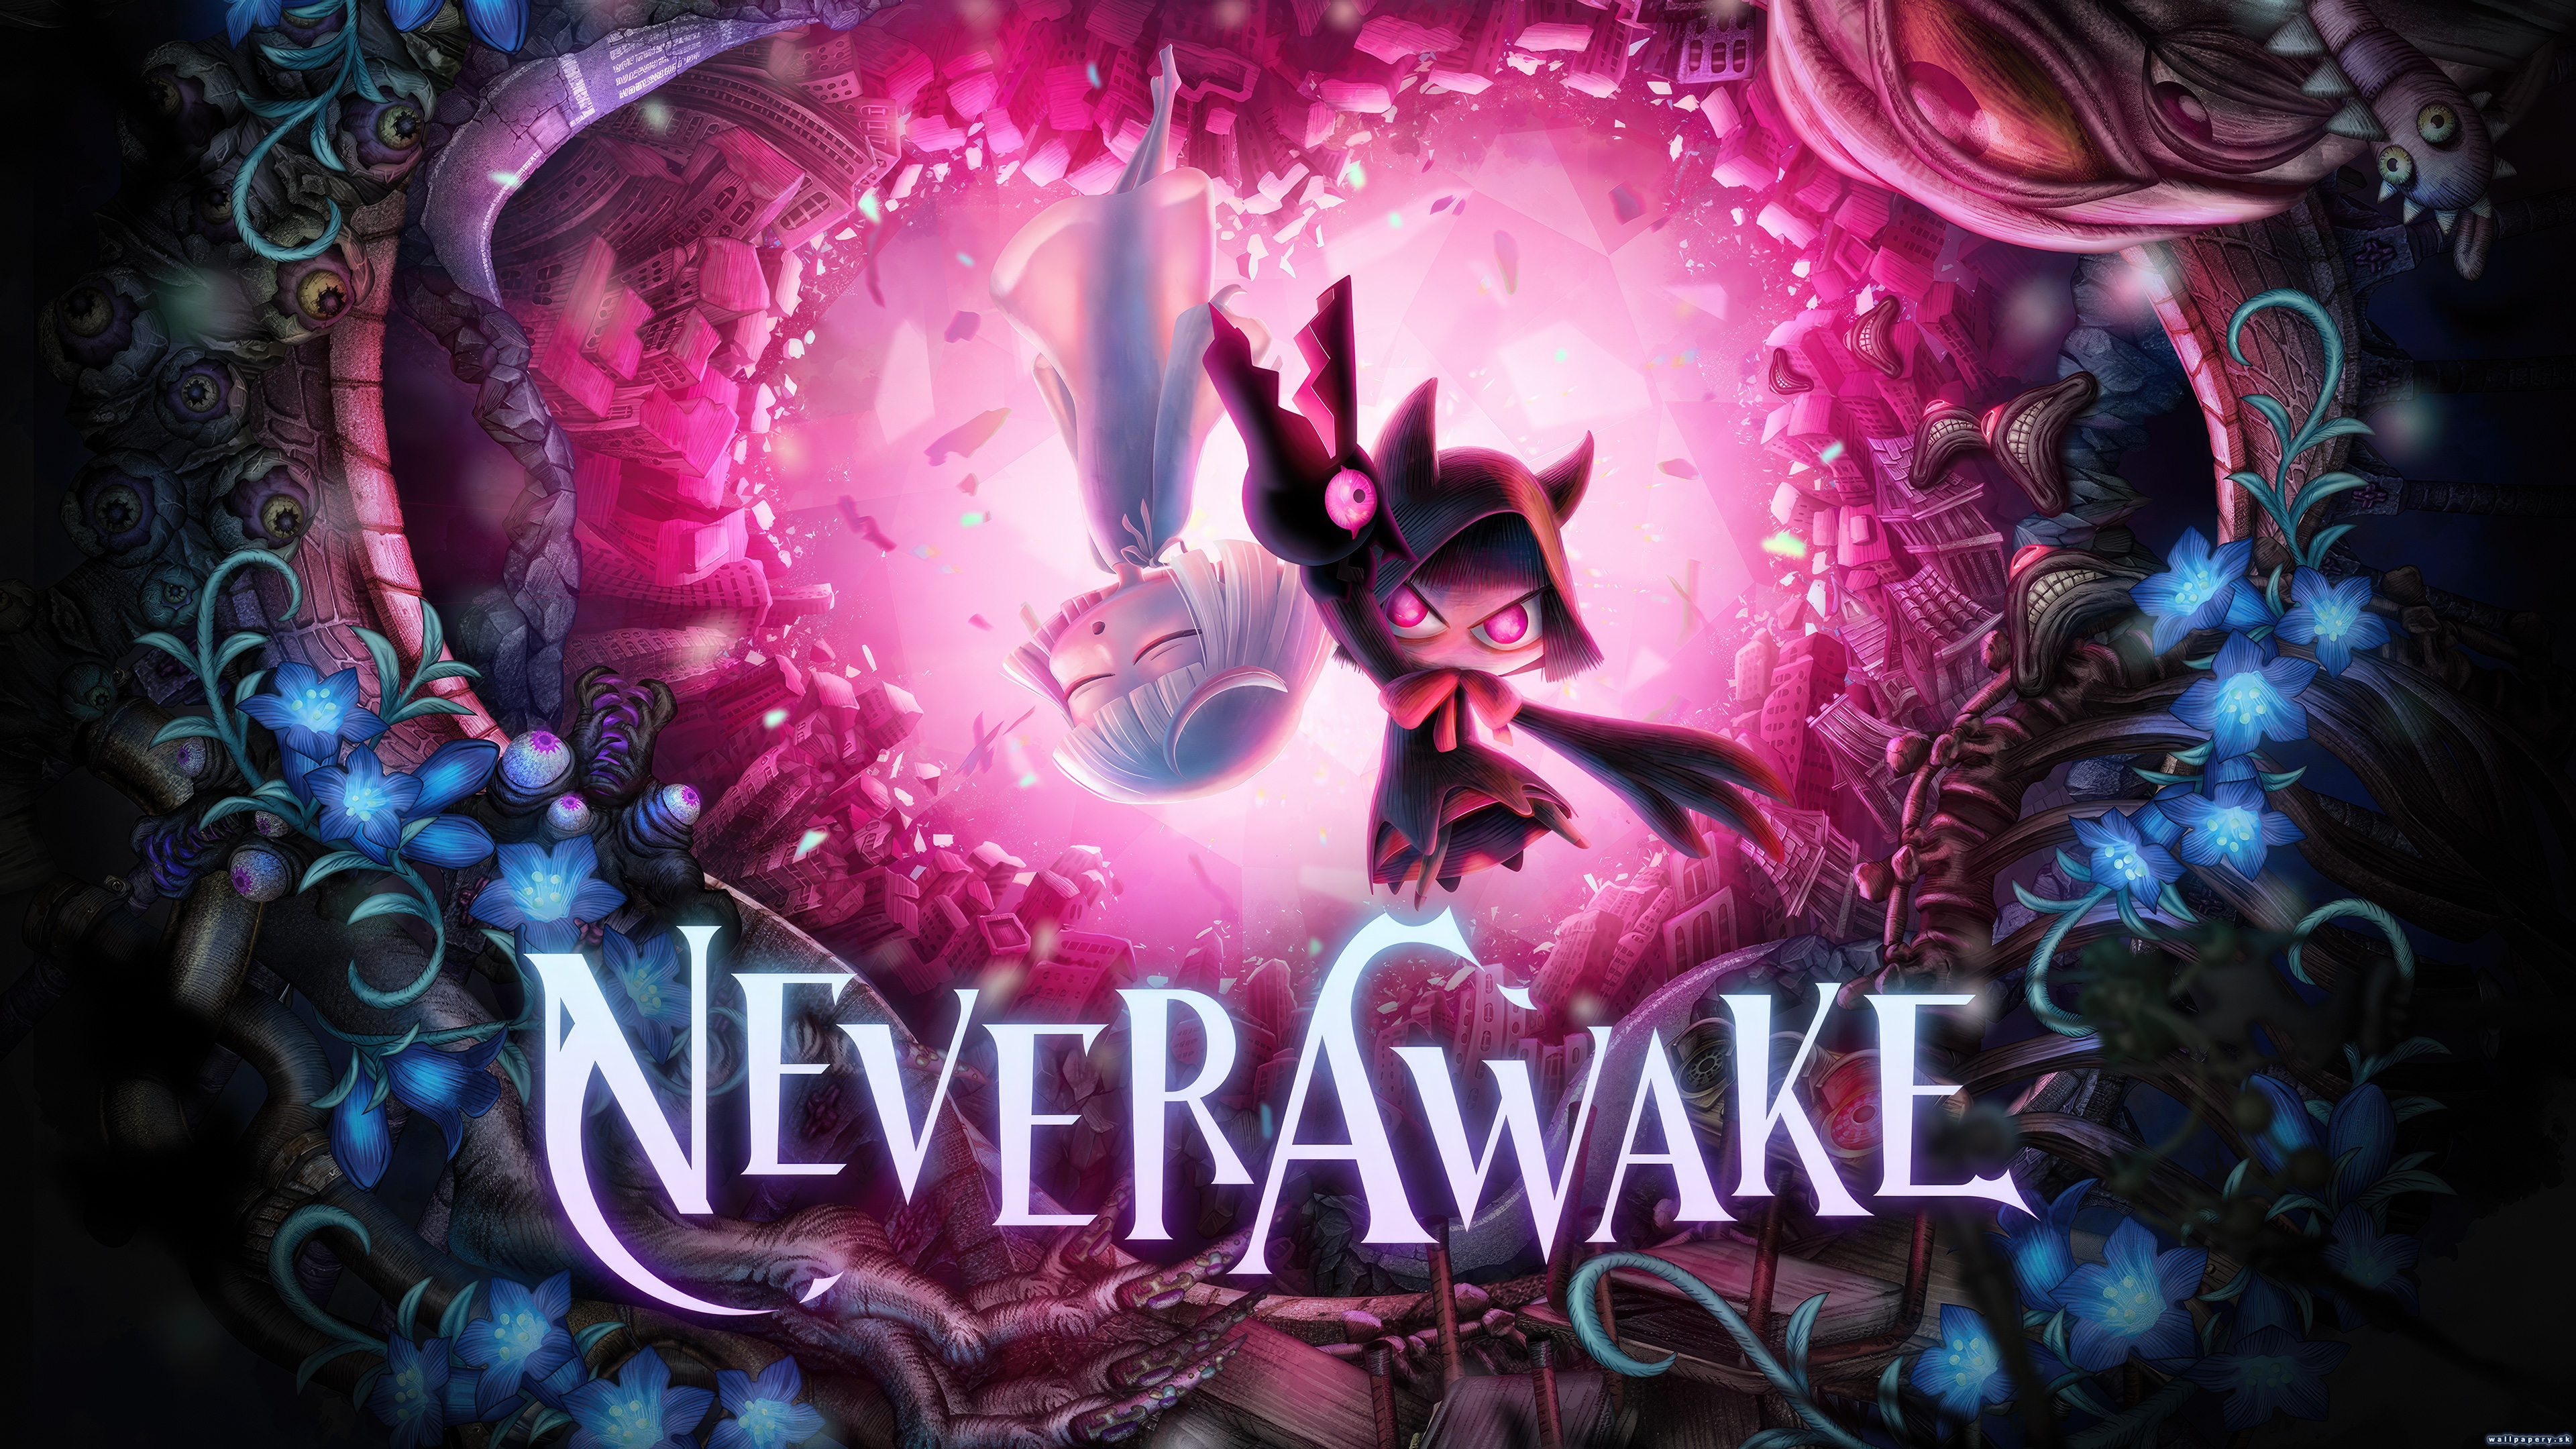 NeverAwake - wallpaper 1